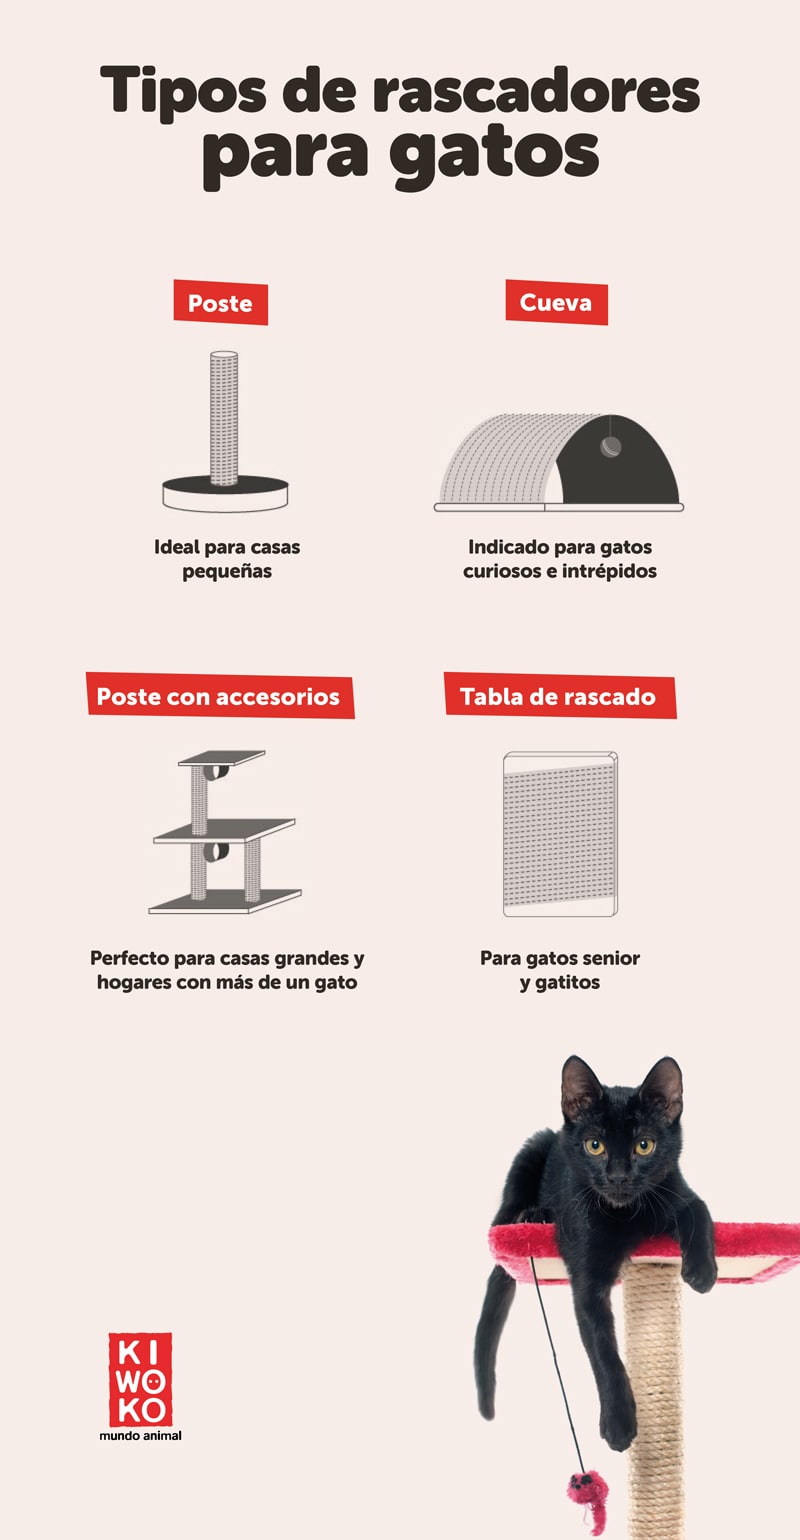 Tipos de rascadores para gatos